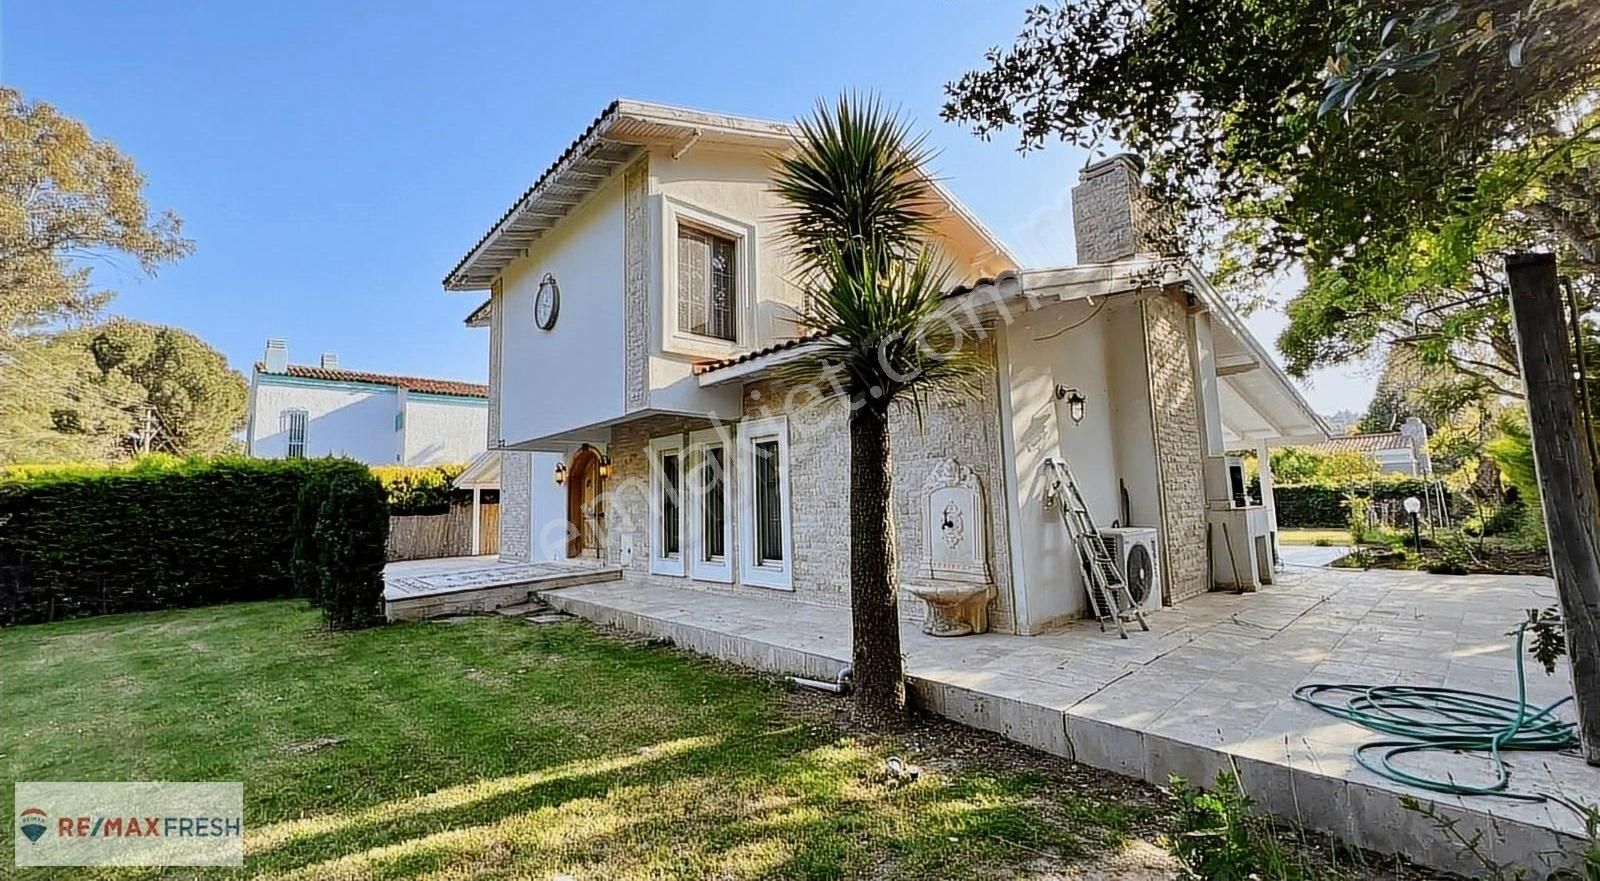 Urla Yağcılar Satılık Villa Urla Altınköy Sitesinde Satılık 4+1 Müstakil Dubleks Villa